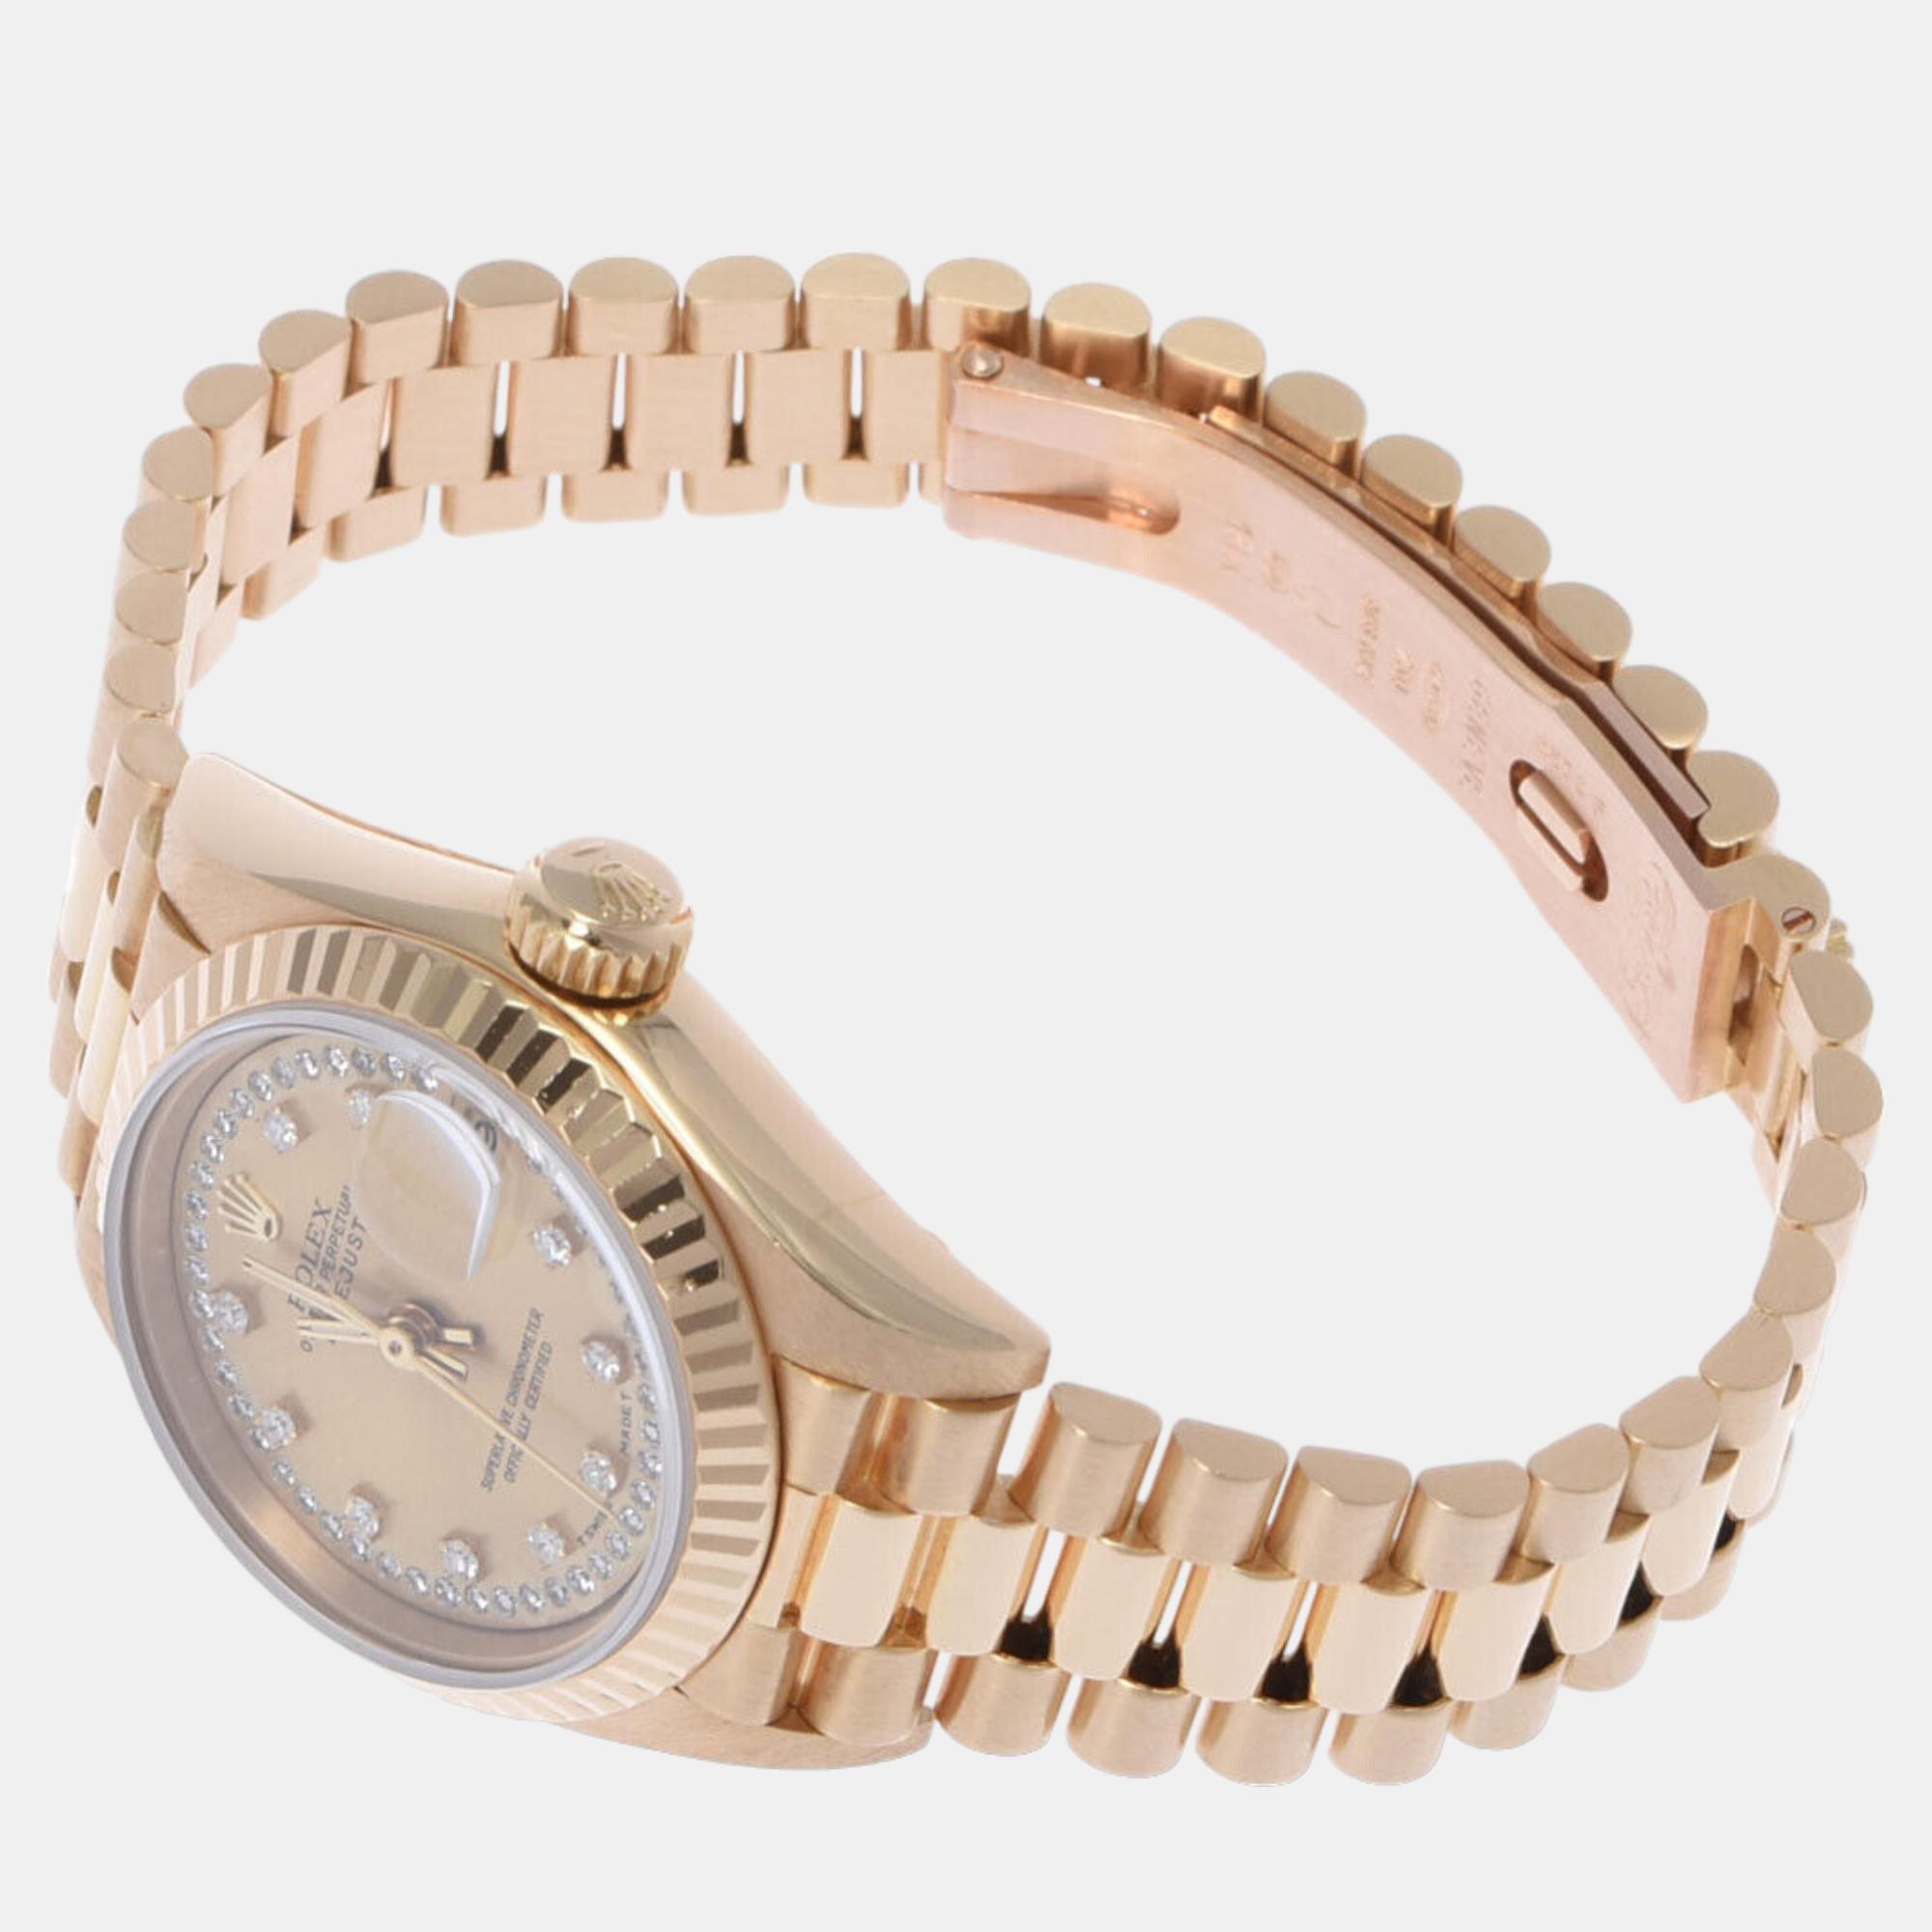 Rolex Champagne Diamond 18k Yellow Gold Datejust 69178 Automatic Women's Wristwatch 26 Mm